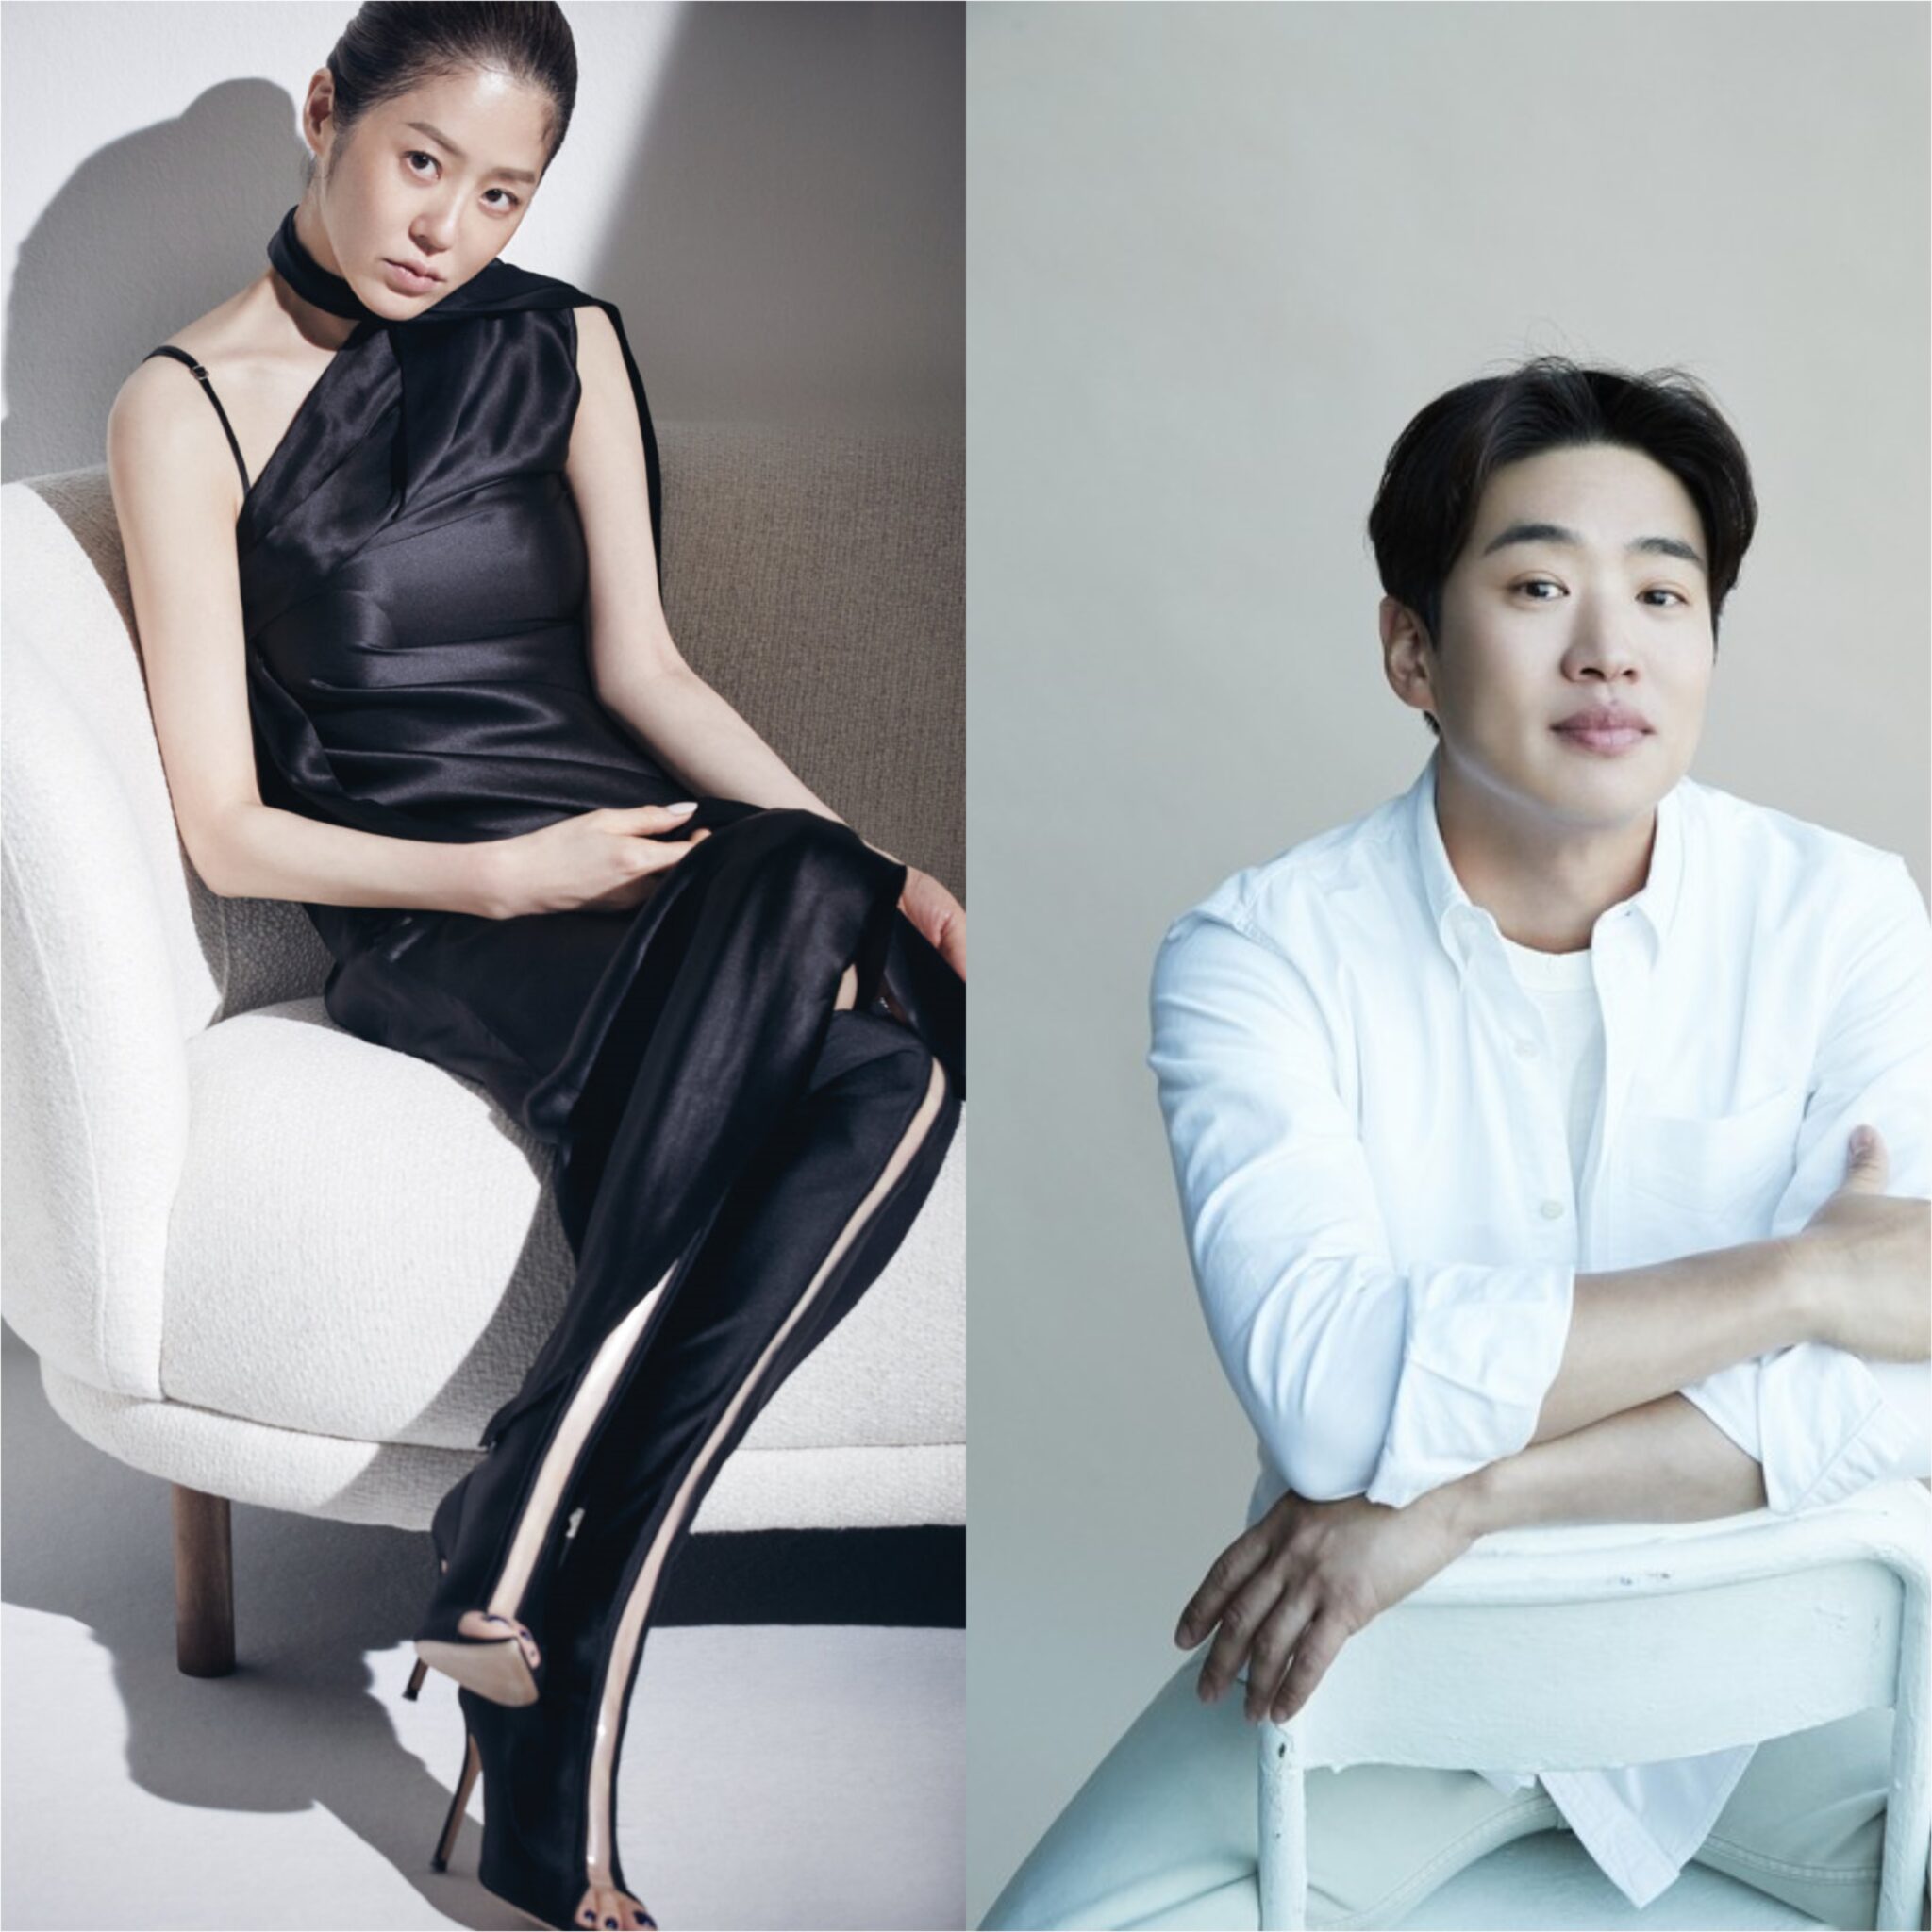 Go Hyun-jung, Ahn Jae-hong in talks for new Netflix comedy-thriller